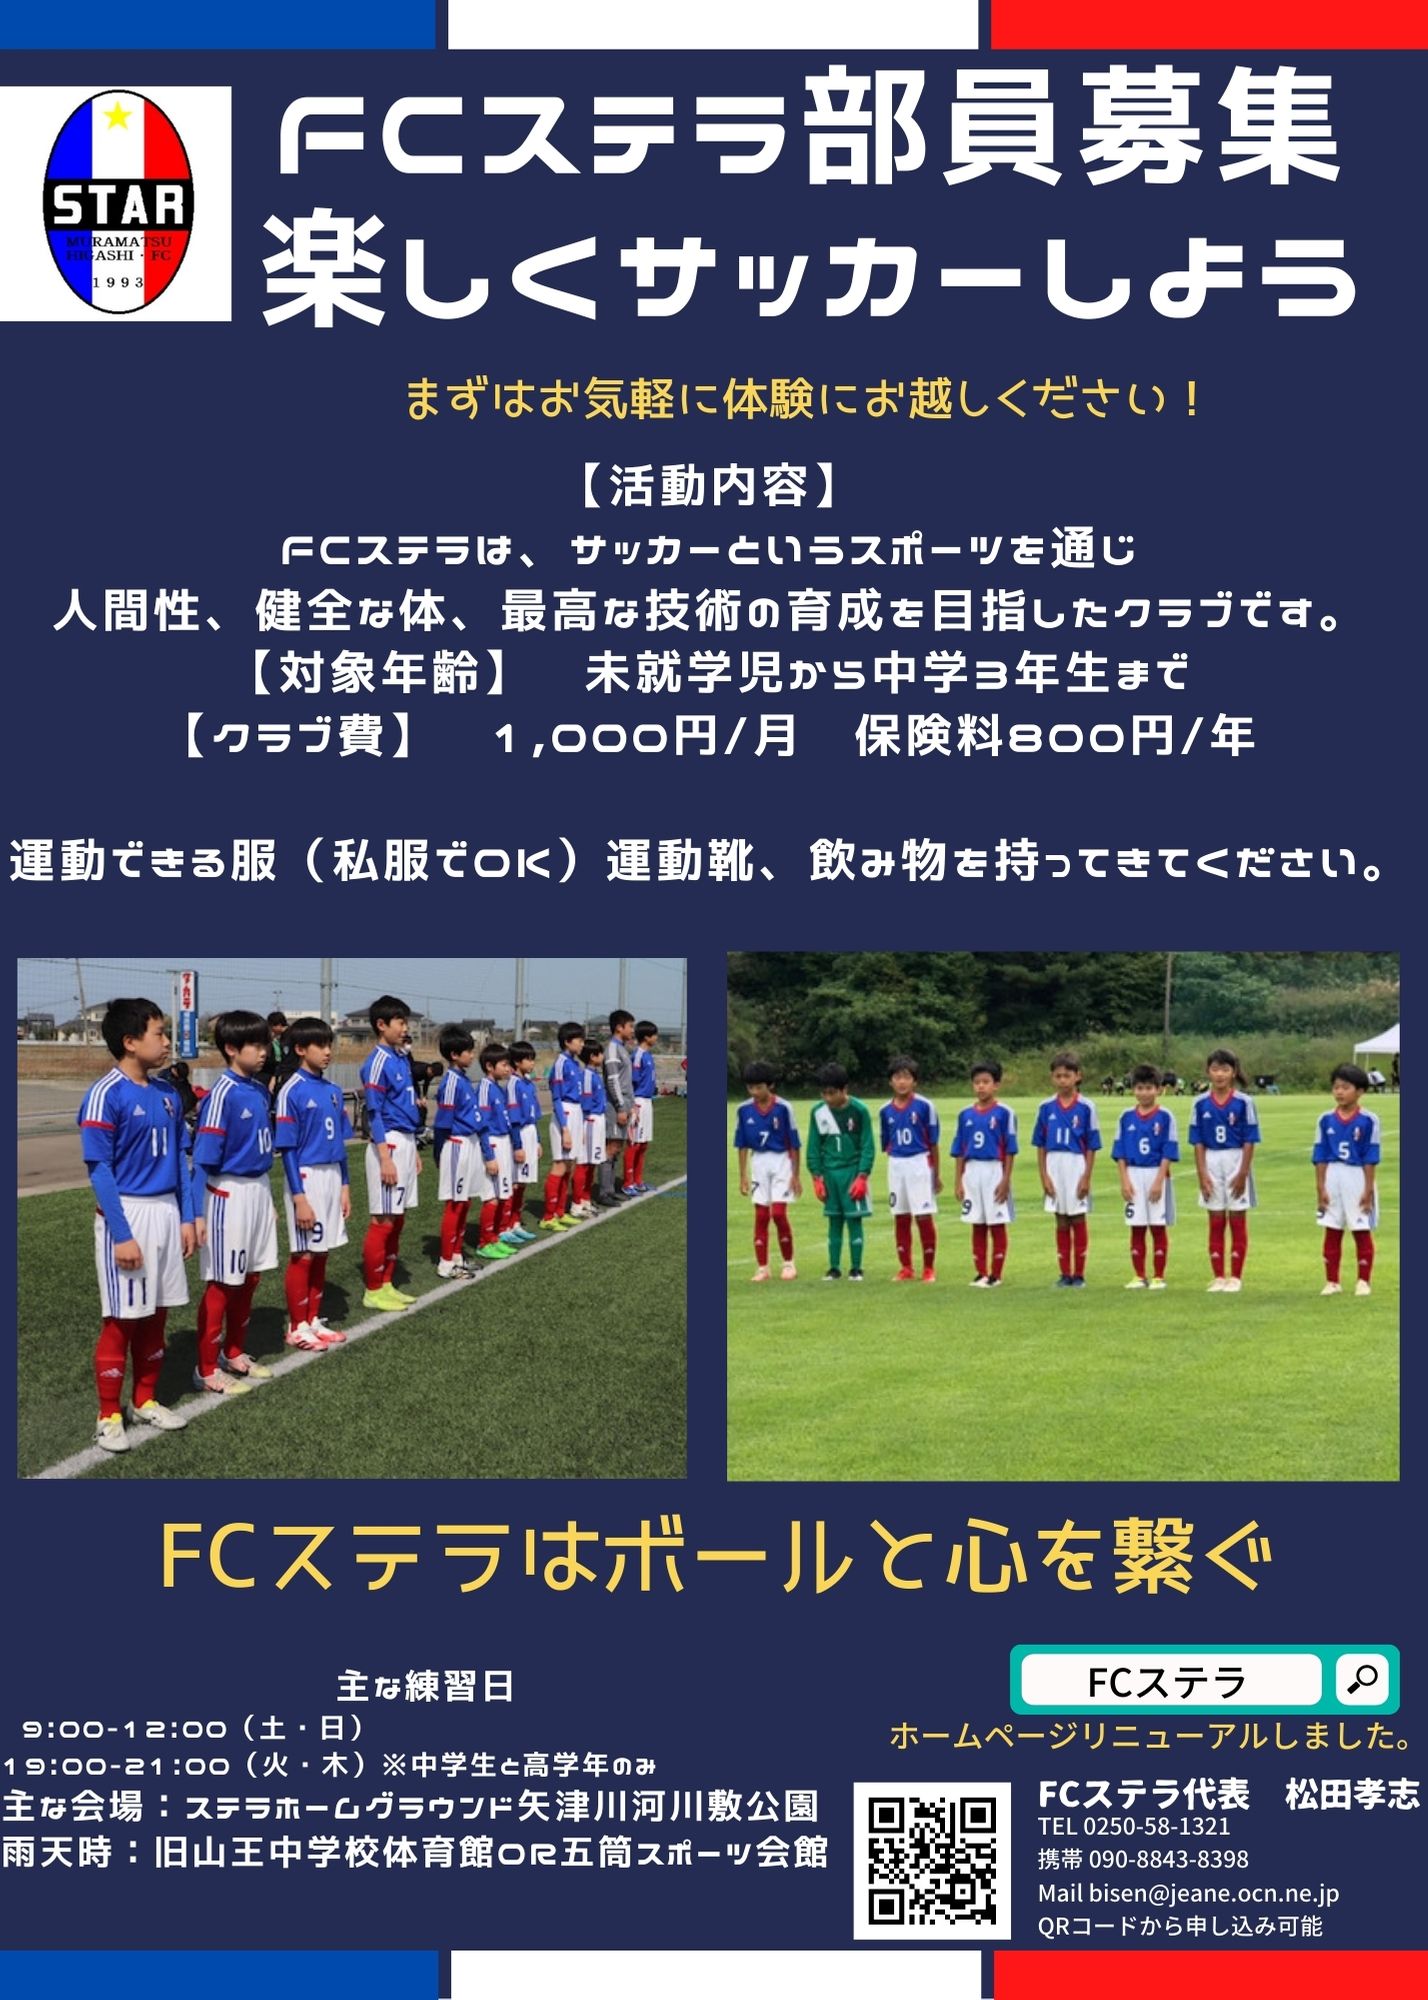 クラブ Fcステラ Official Site